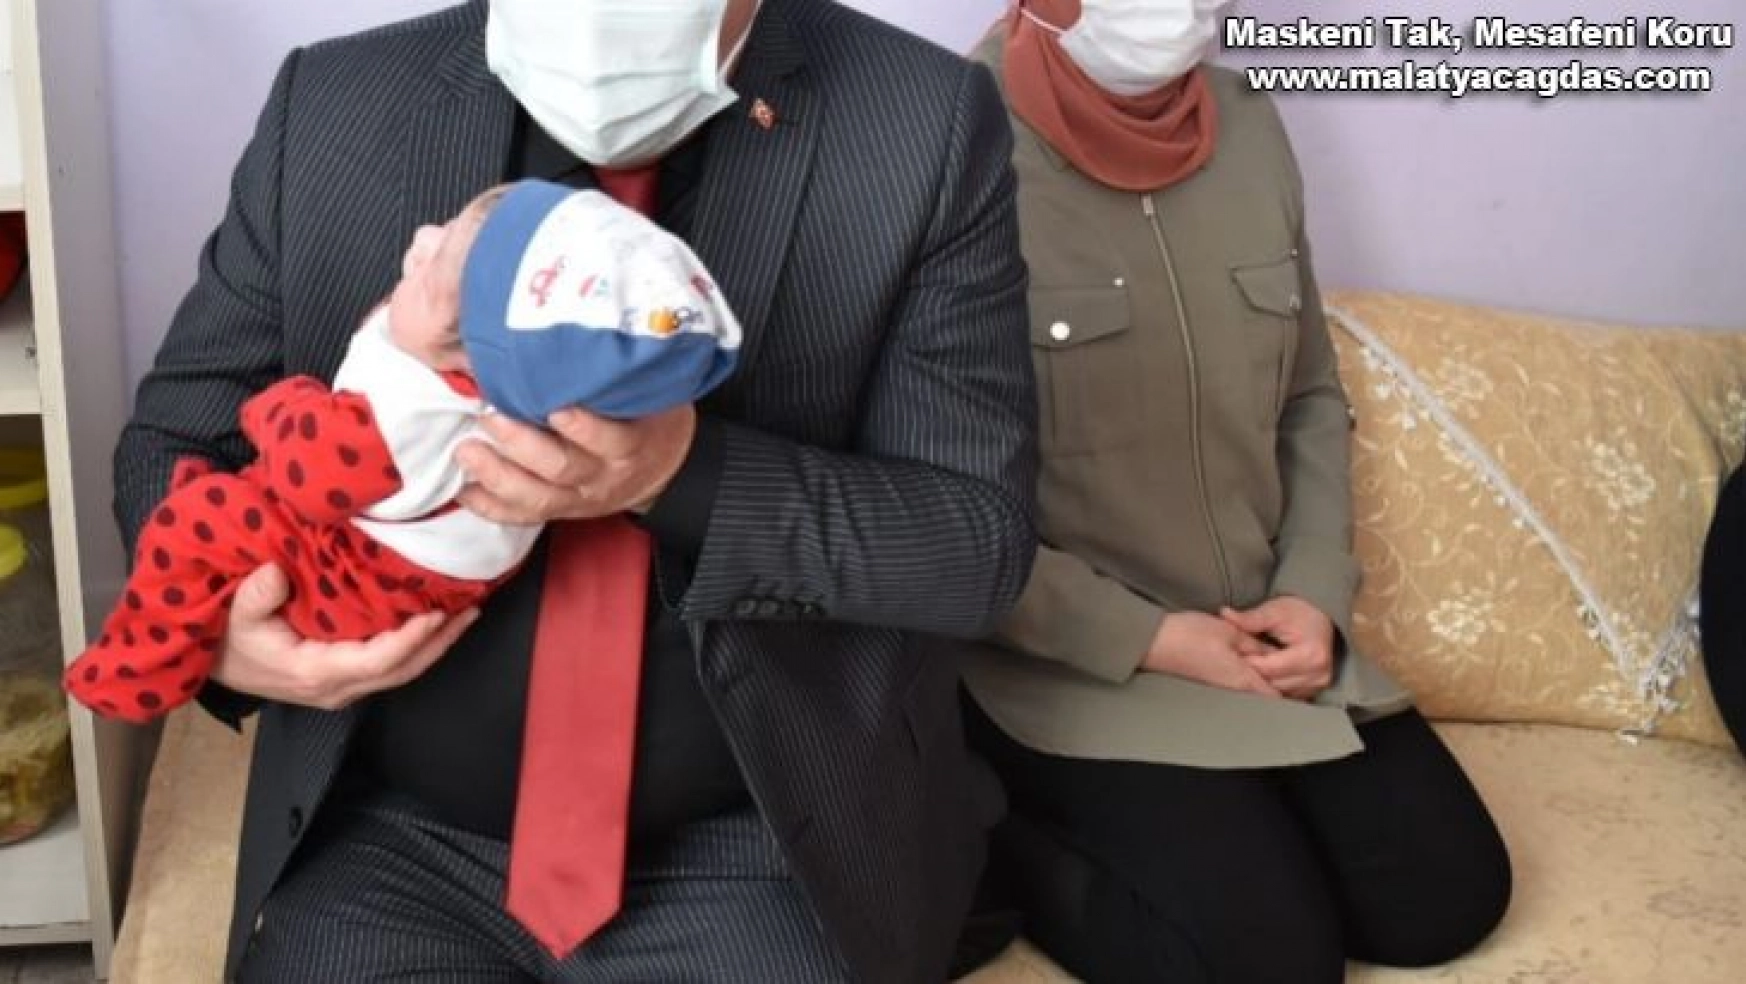 Başkan Beyoğlu, ziyaret ettiği evde yeni doğan bebeğin kulağına ezan okuyup isim verdi